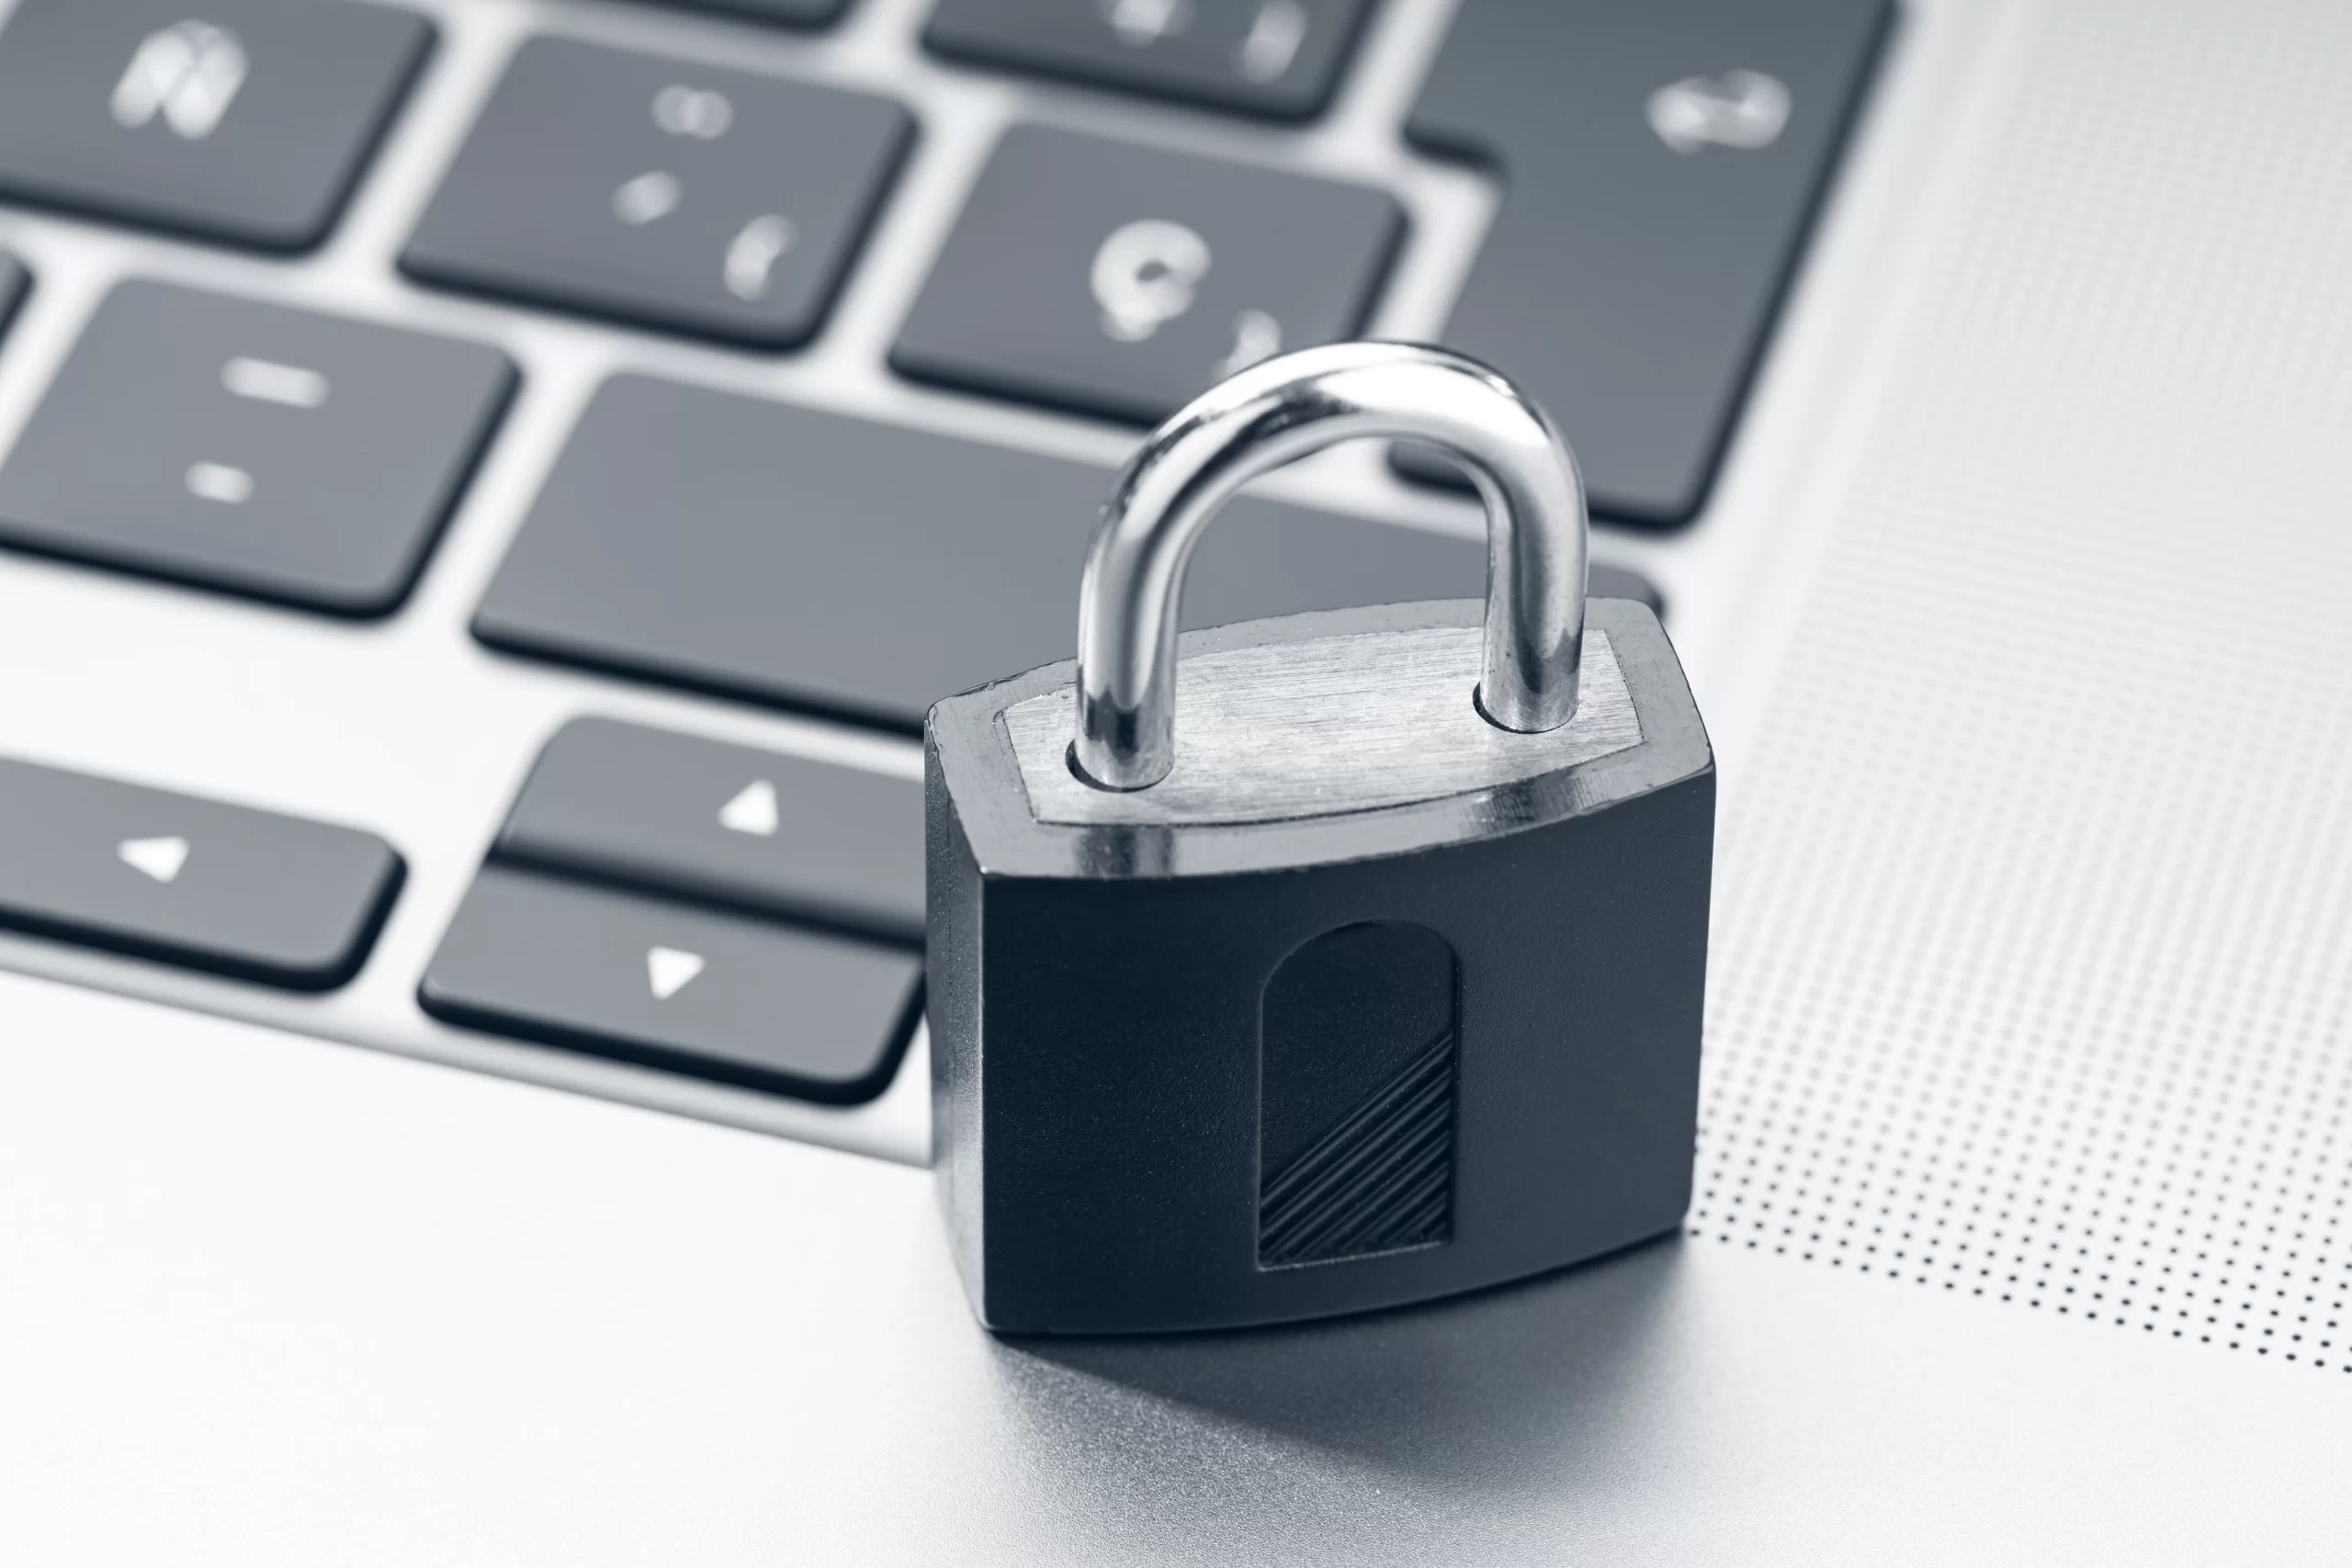 teclado com um cadeado, representando a segurança da informação